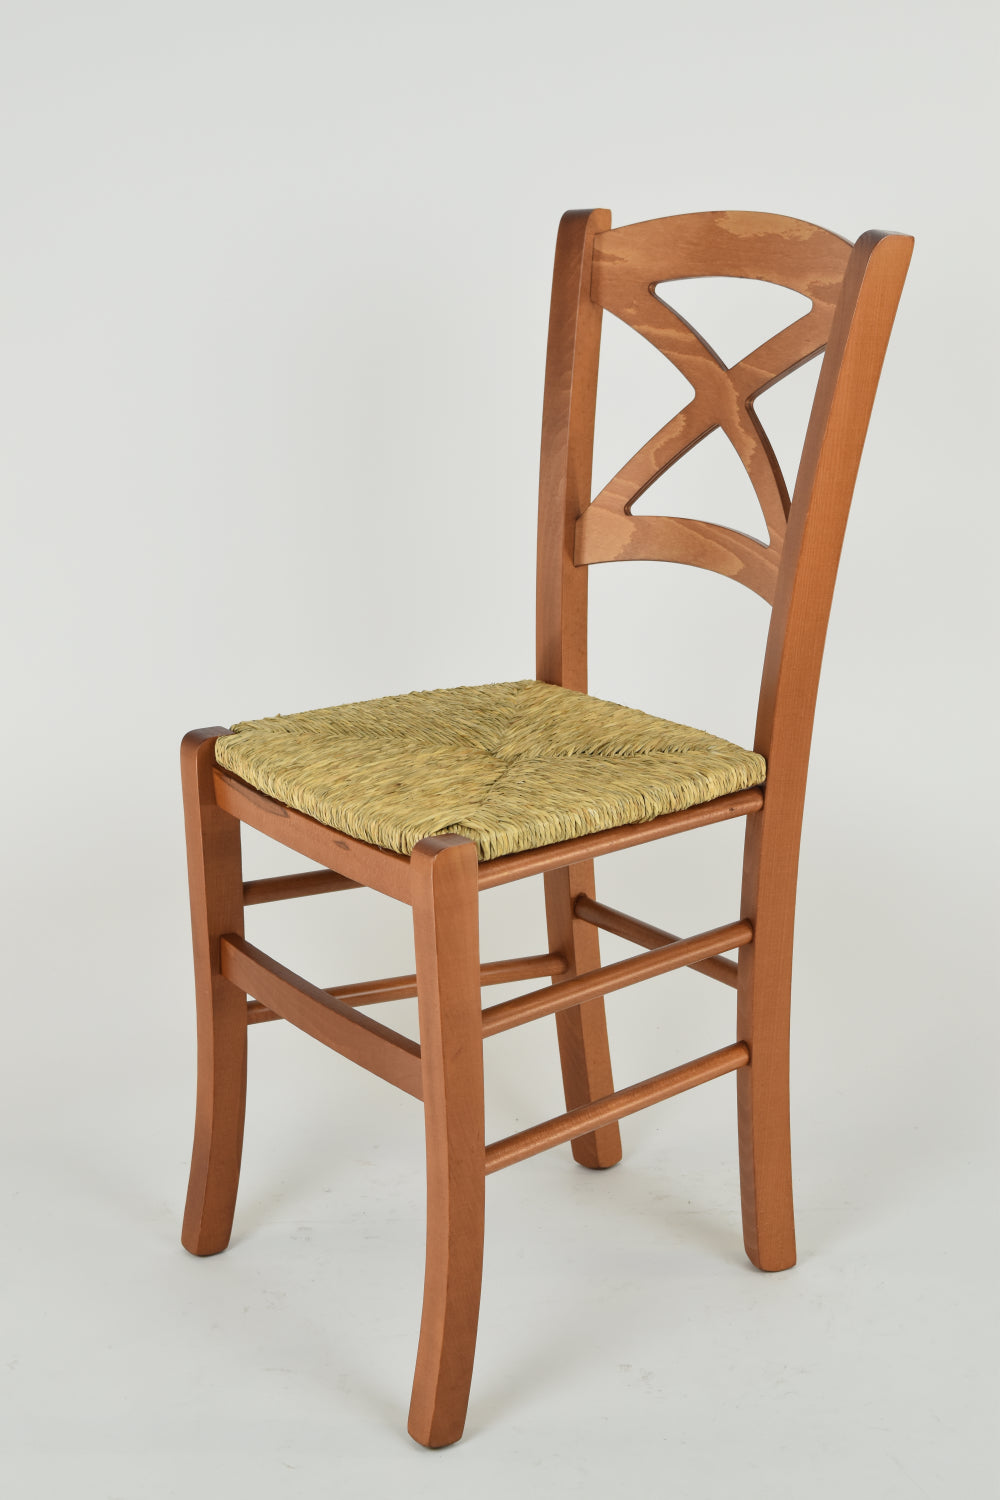 Tommychairs - Set 2 sillas de Cocina y Comedor Cross, Estructura en Madera de Haya Color Cerezo y Asiento en Paja